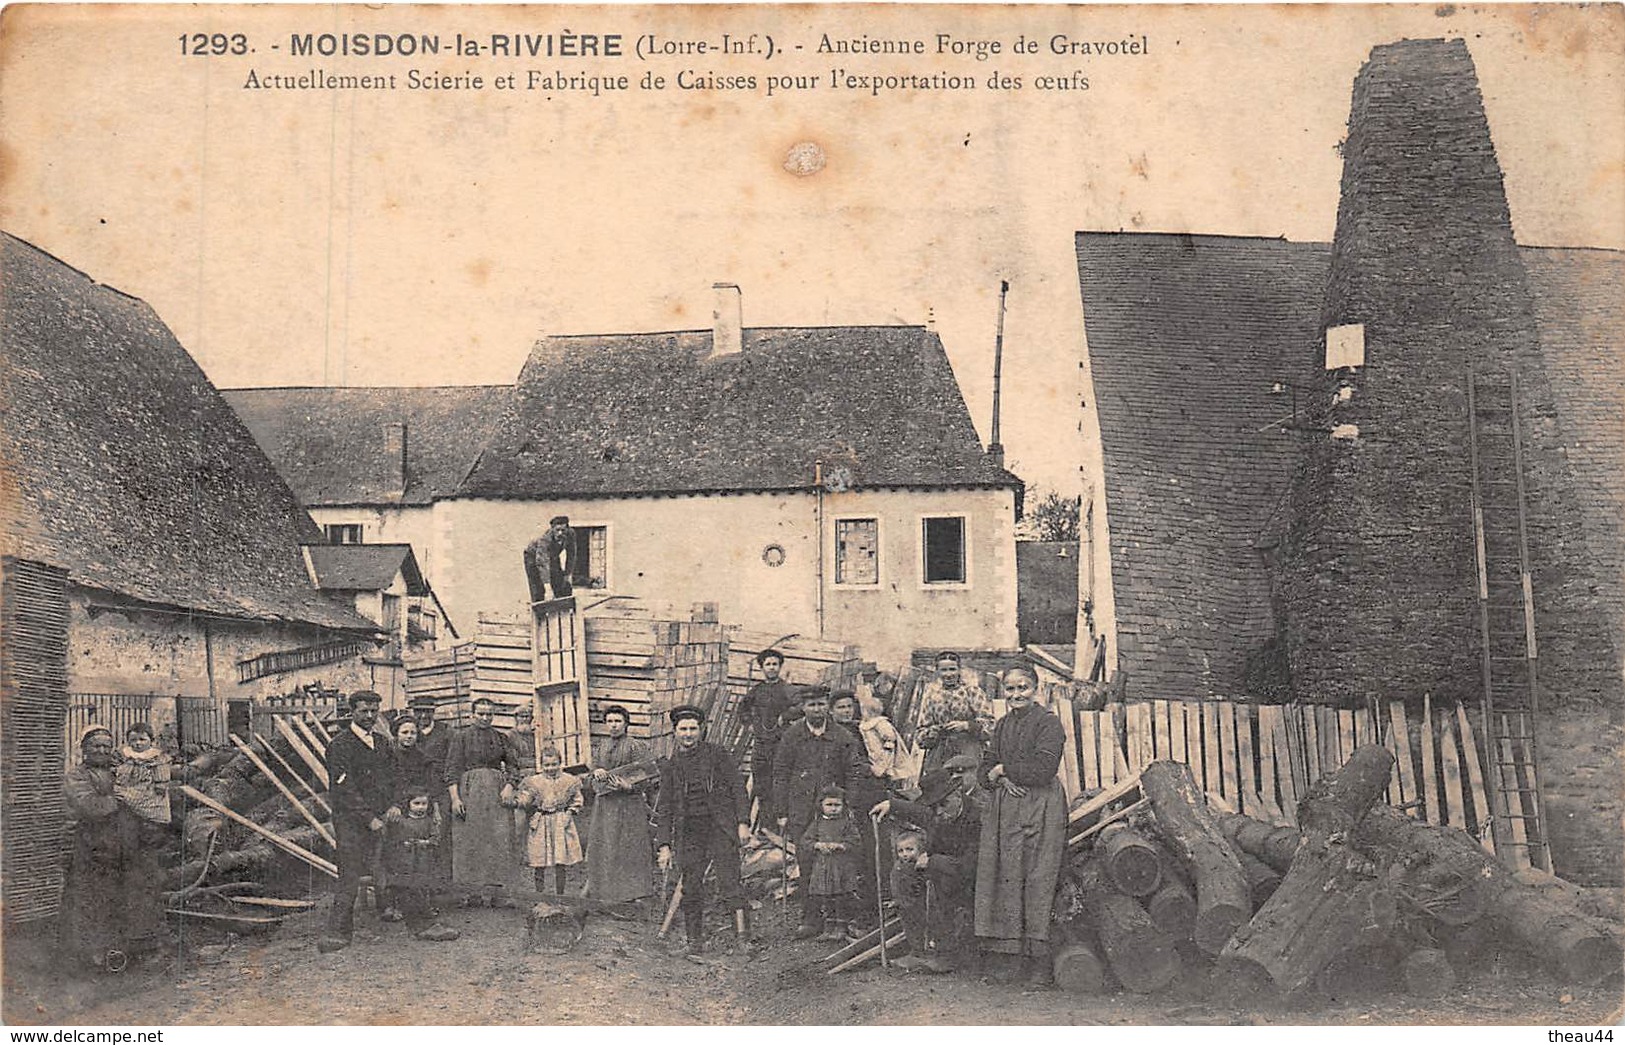 MOISDON-la-RIVIERE - Ancienne Forge De Gravotel - Actuellement Scierie, Fabrique De Caisses Pour L'exportation Des Oeufs - Moisdon La Riviere